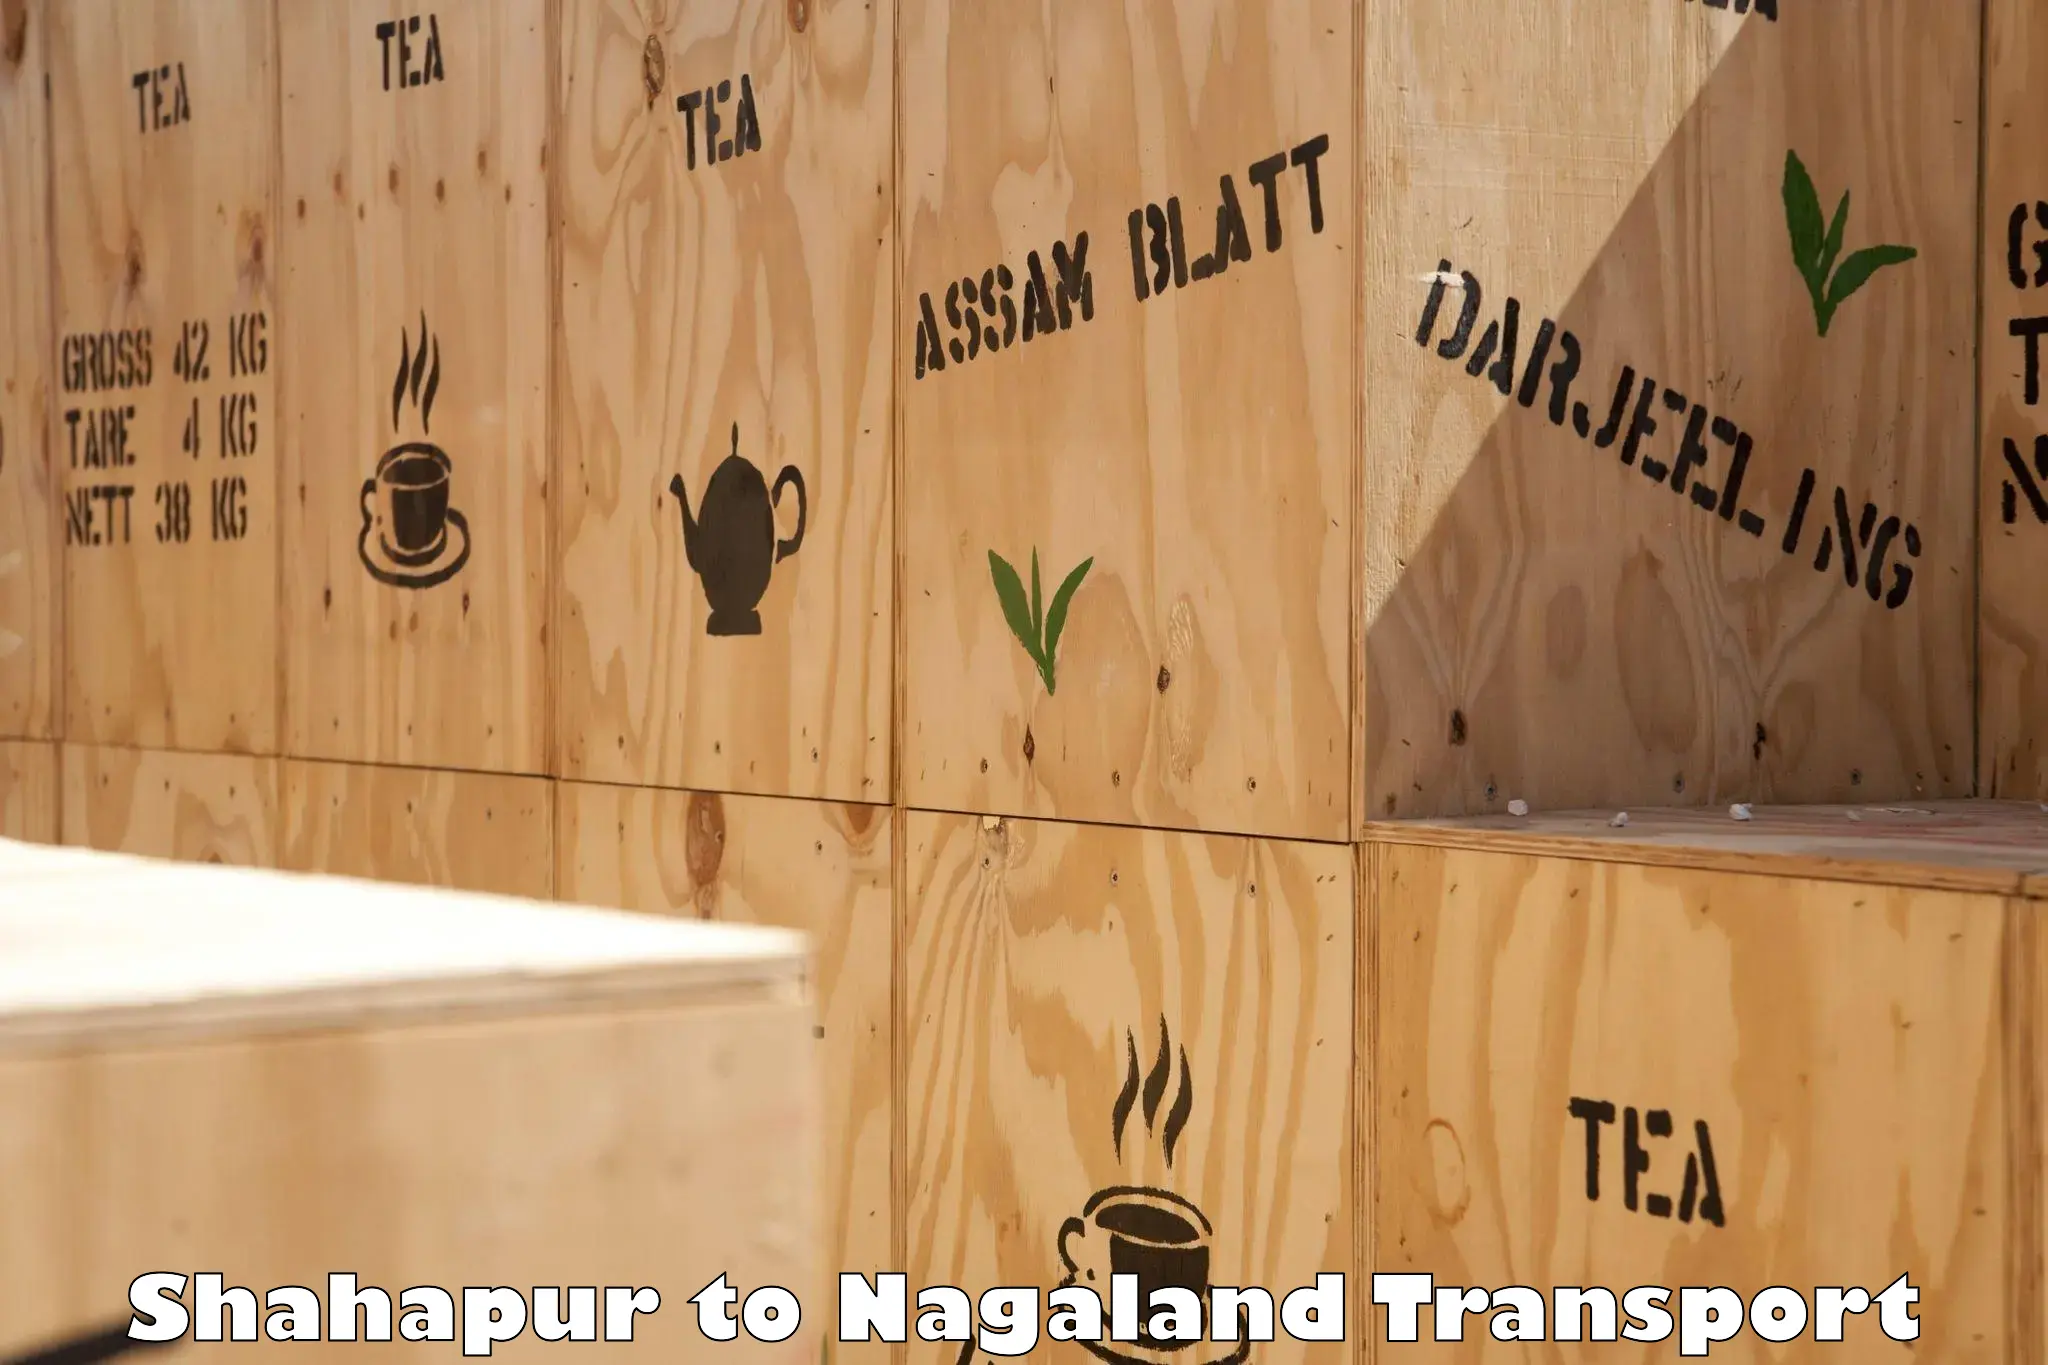 Cycle transportation service Shahapur to Nagaland